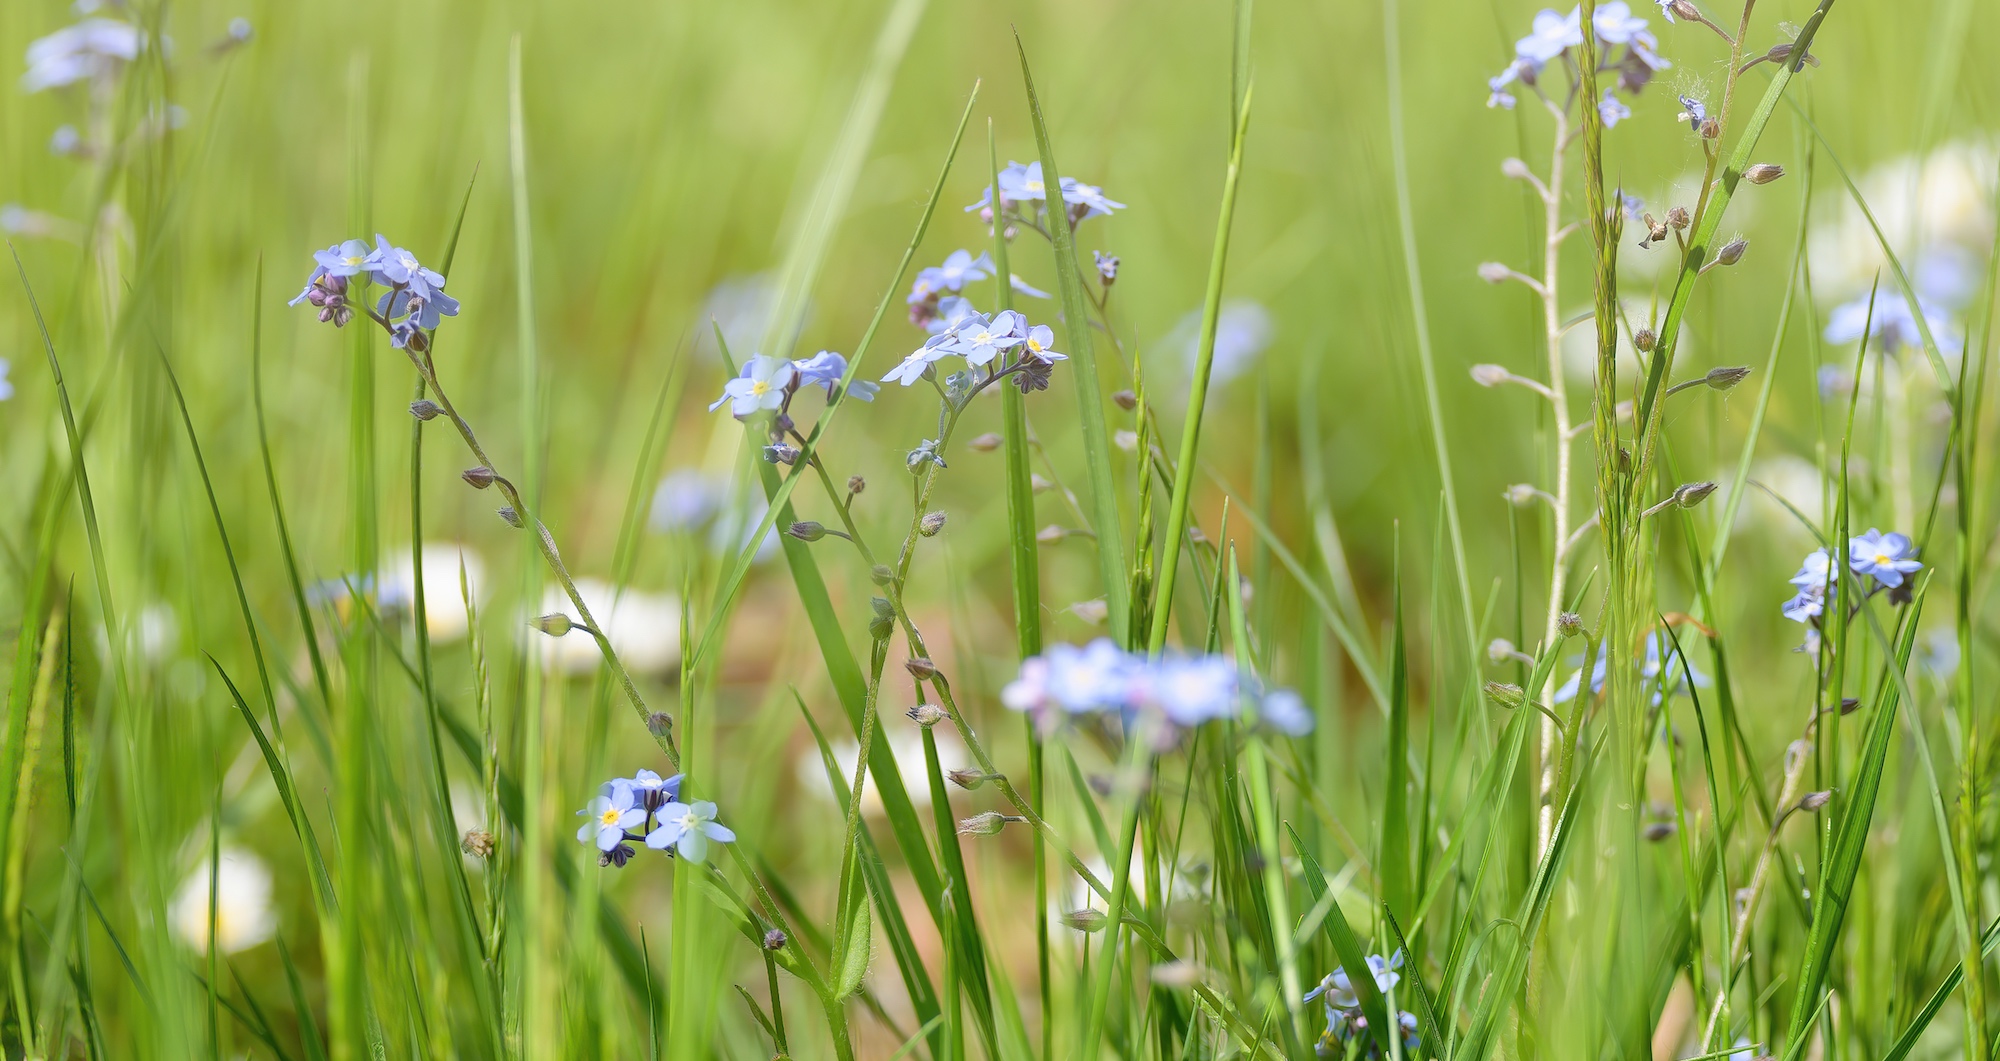 Une pelouse non tondue attire la biodiversité. © K I Photography, Adobe Stock